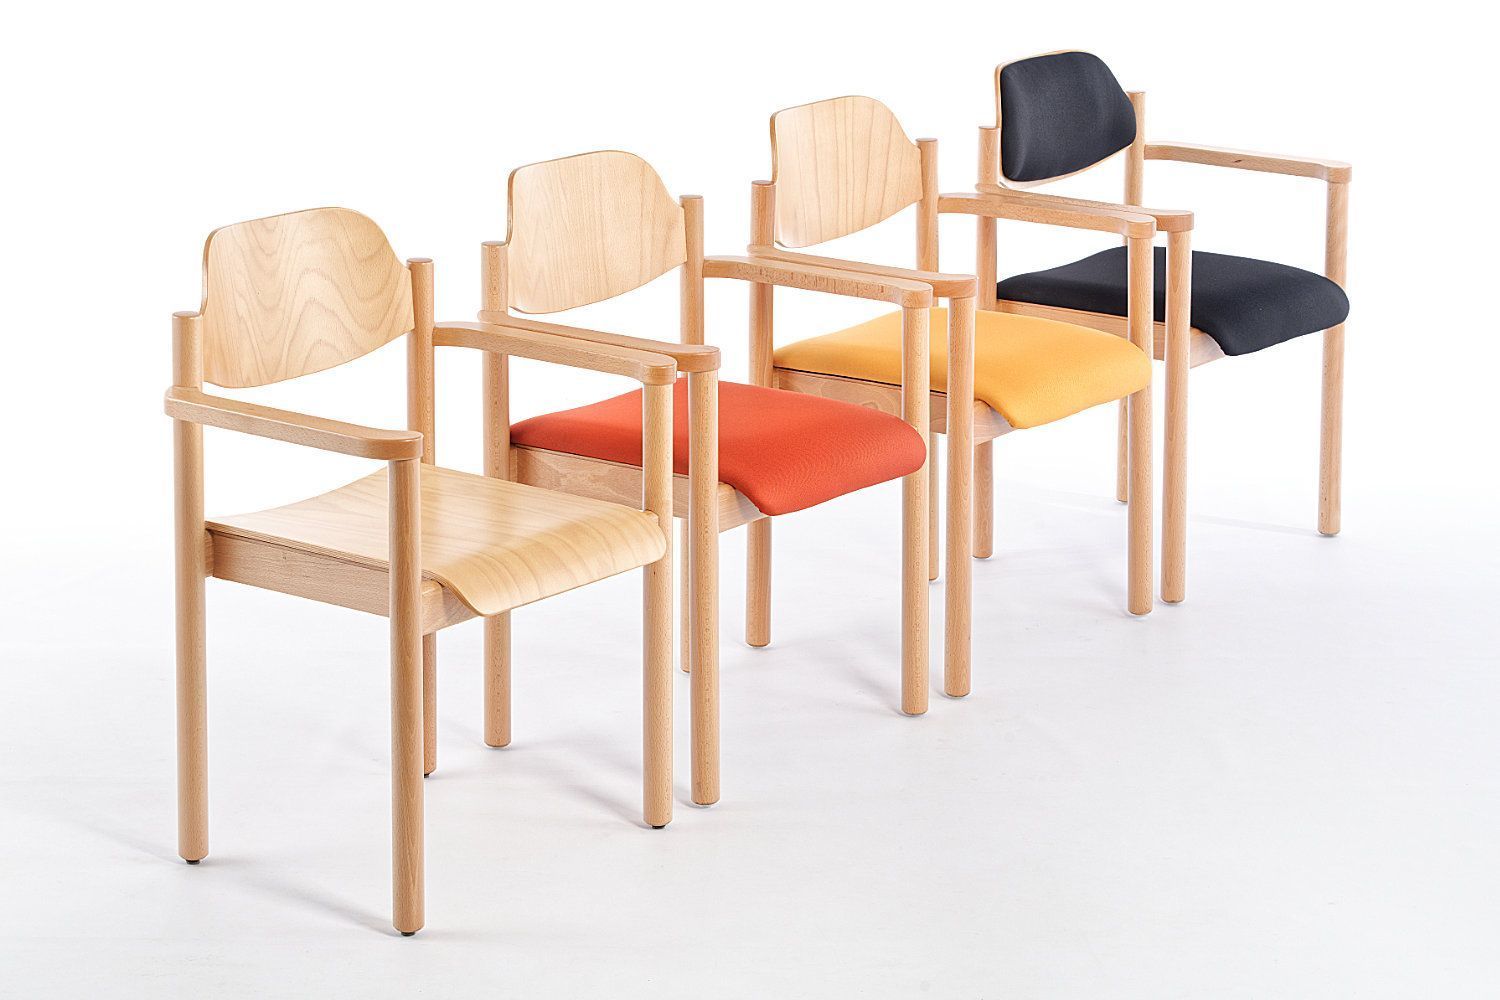 Die verschiedenen Stühle der Dresden AL Modellfamilie geben auch zusammen ein ordentliches Bild